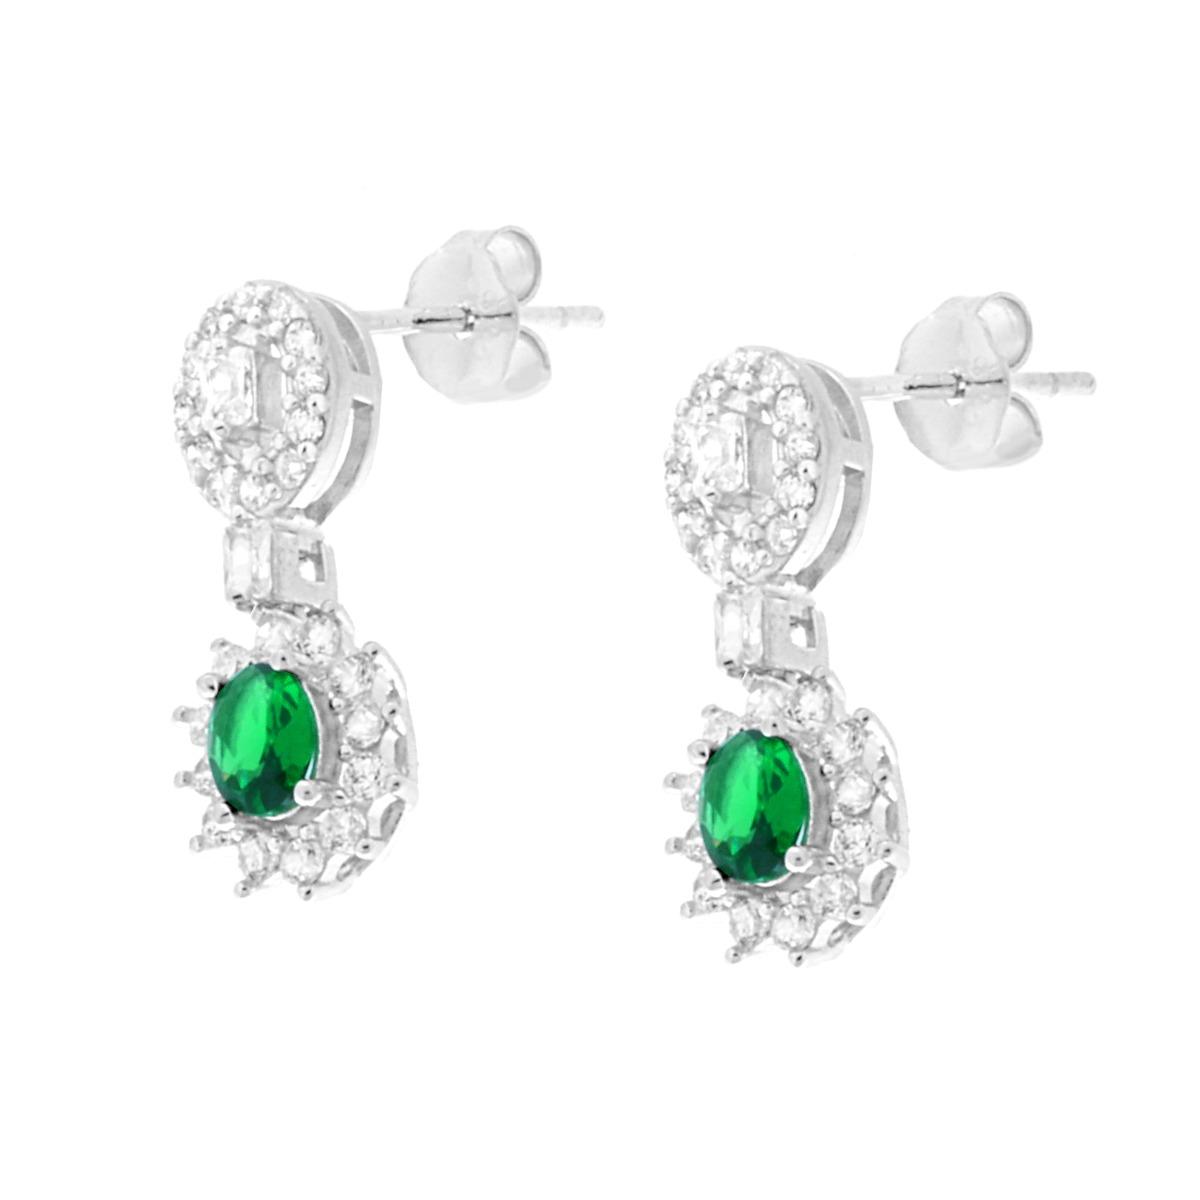 Parure Set Orecchini e Collana Ovali Verde Smeraldo contornati da Cubic Zirconia Bianchi in ARGENTO 925 Galvanica Rodio